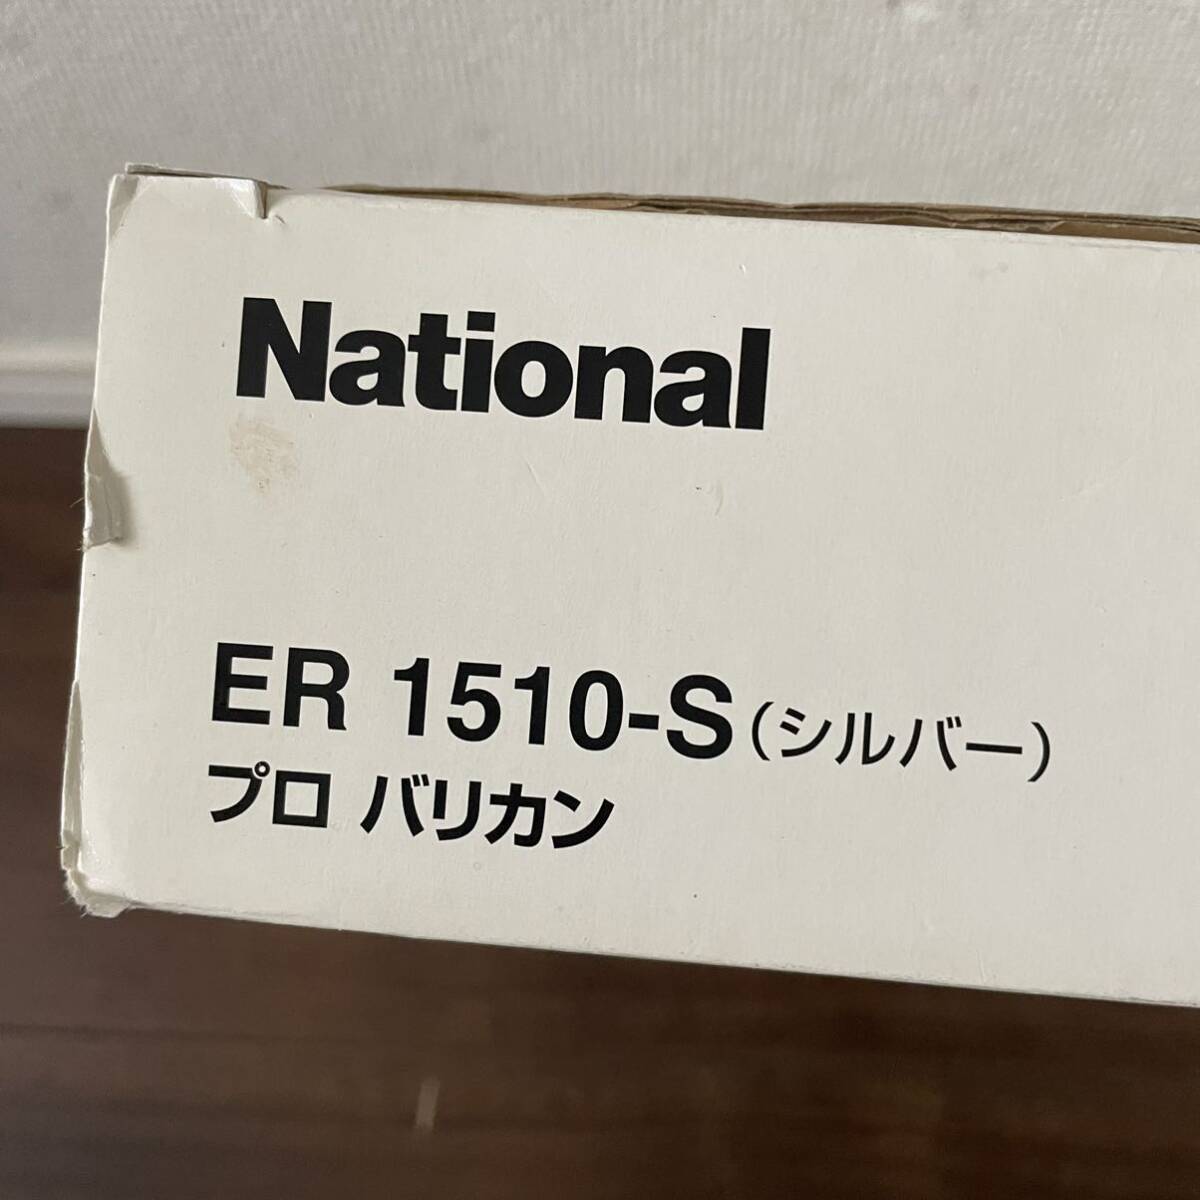 *National National * Pro машинка для стрижки ER 1510-S( серебряный )* для бизнеса *